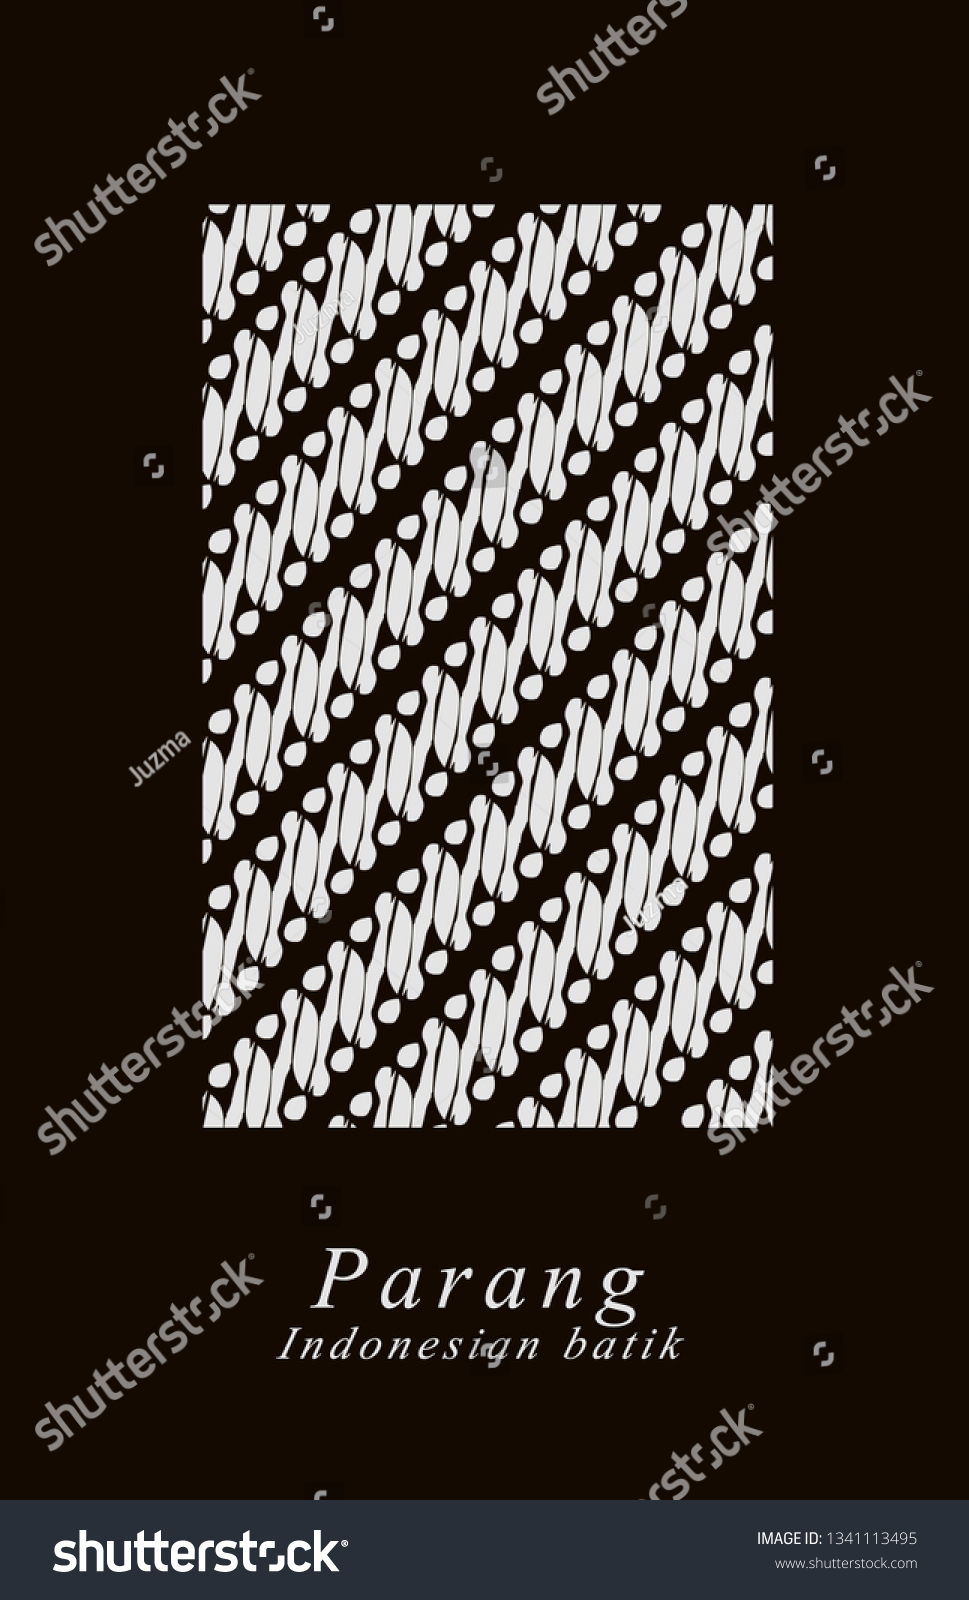 Parang Batik Parang Comes Word Pereng Stock Illustration 1341113495 ...